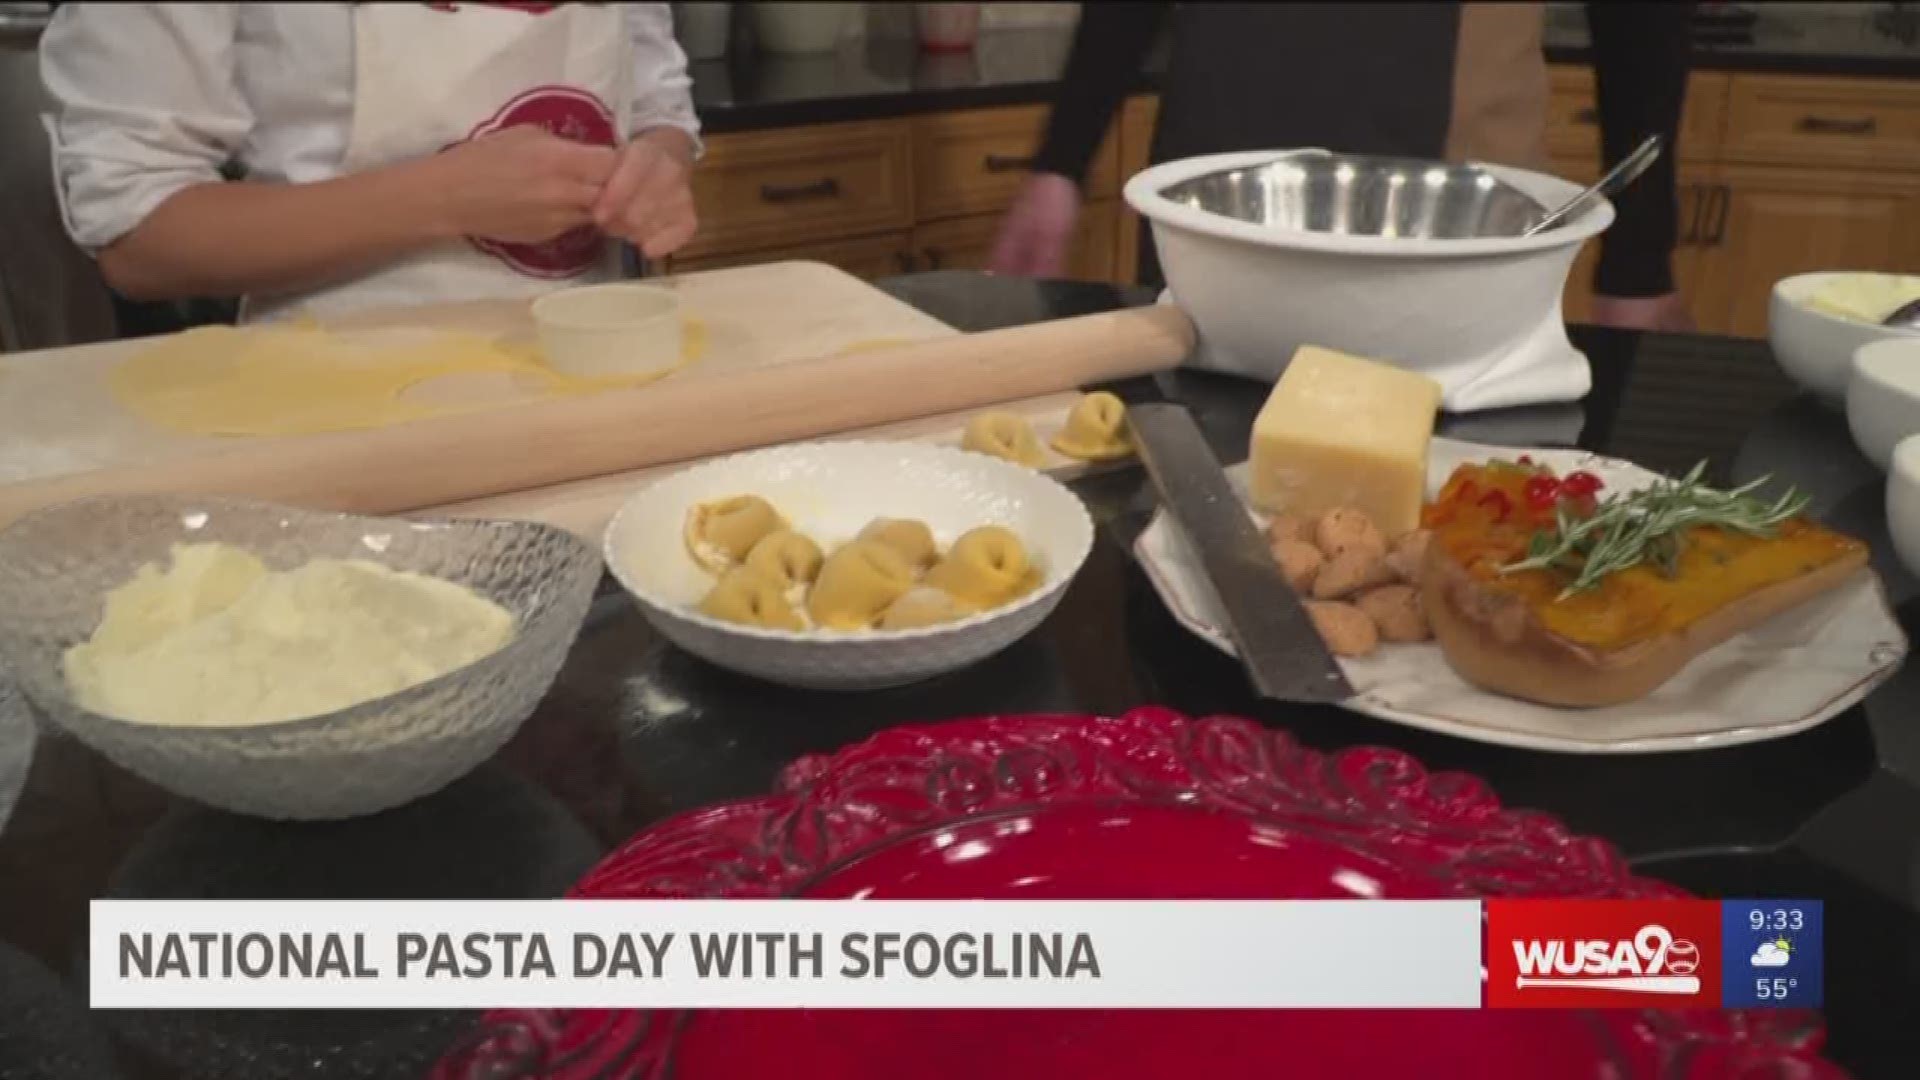 Executive chef Erin Clarke and master pasta maker Simonetta Capotondo of Sfoglina show us a unique fall pasta recipe for National Pasta Day!